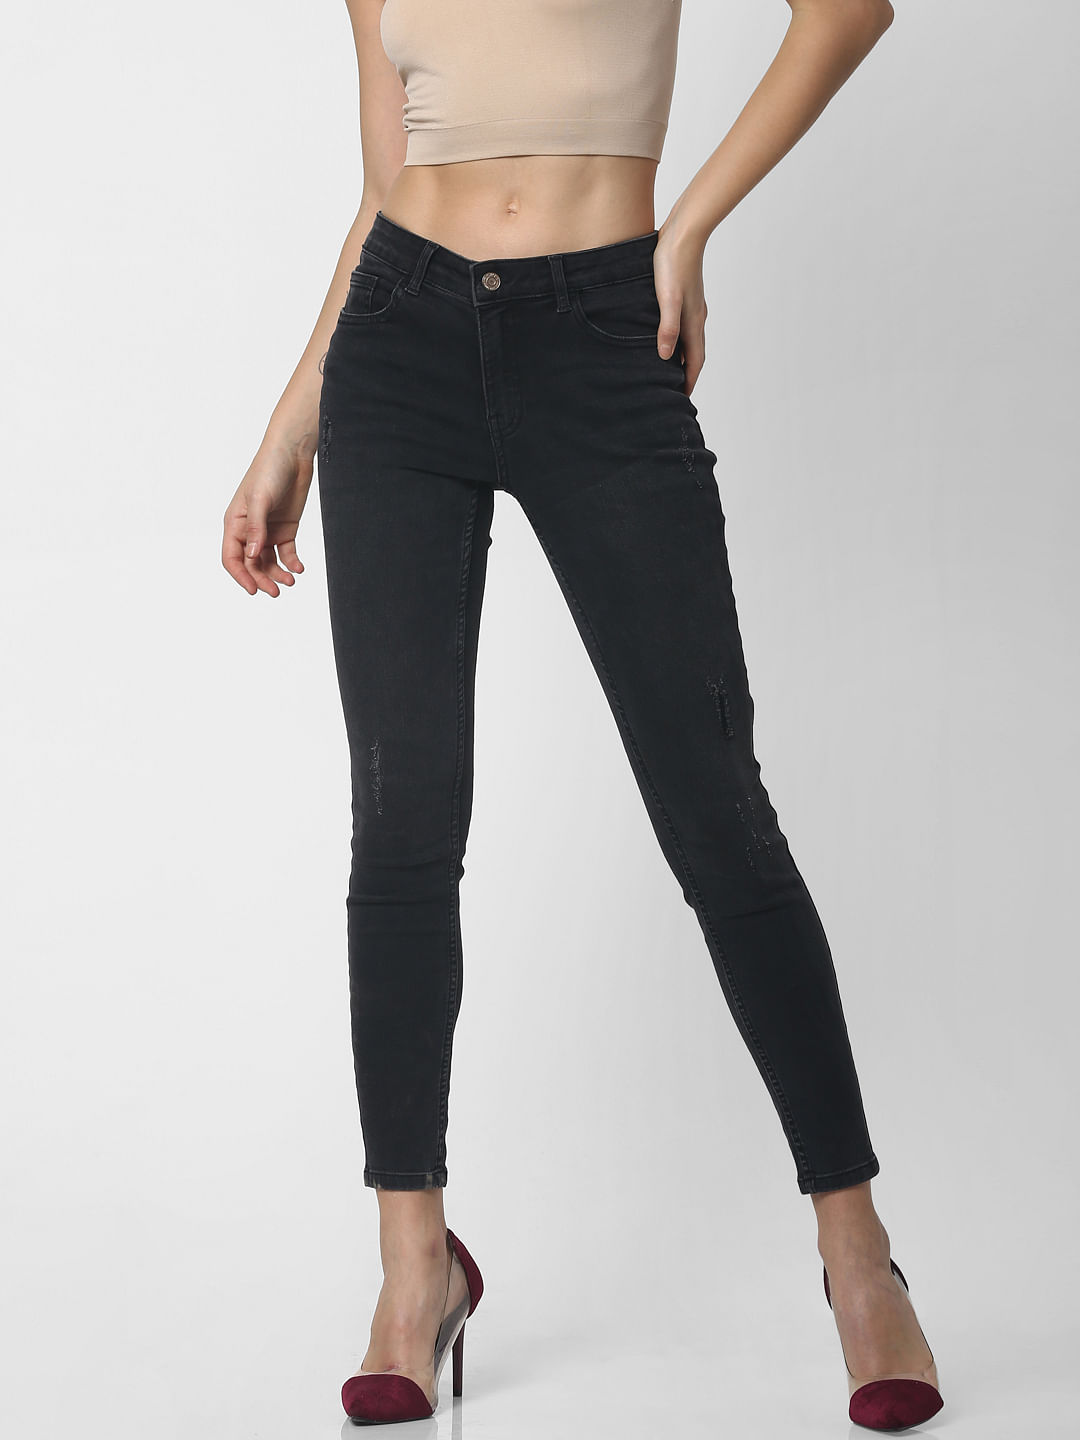 skinny black jeans for girls